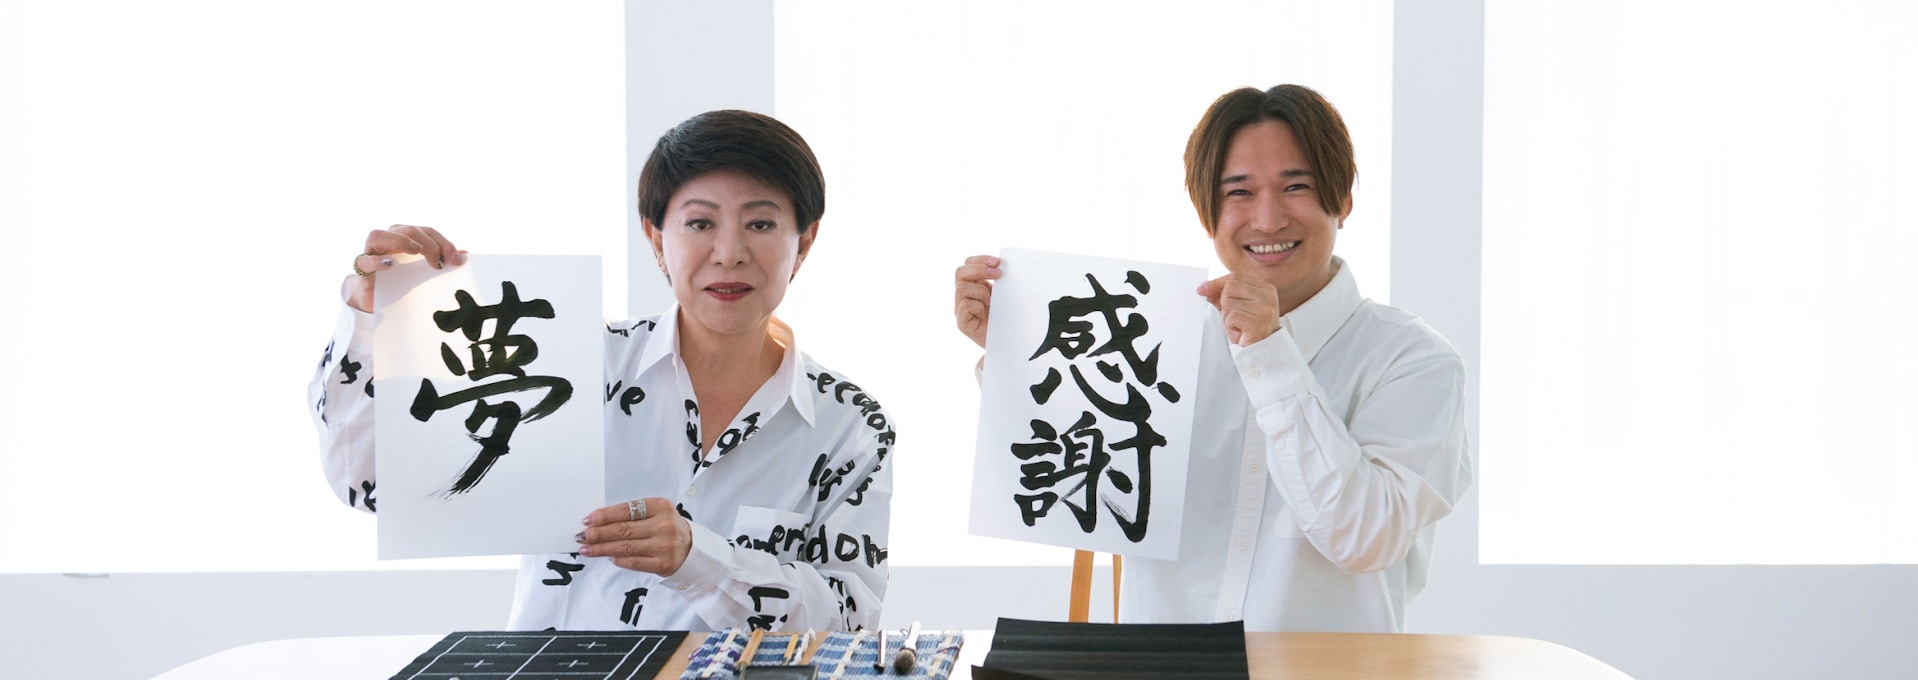 【画像】美川さんとAmeba菊地が書いた書道を持ち笑顔の写真